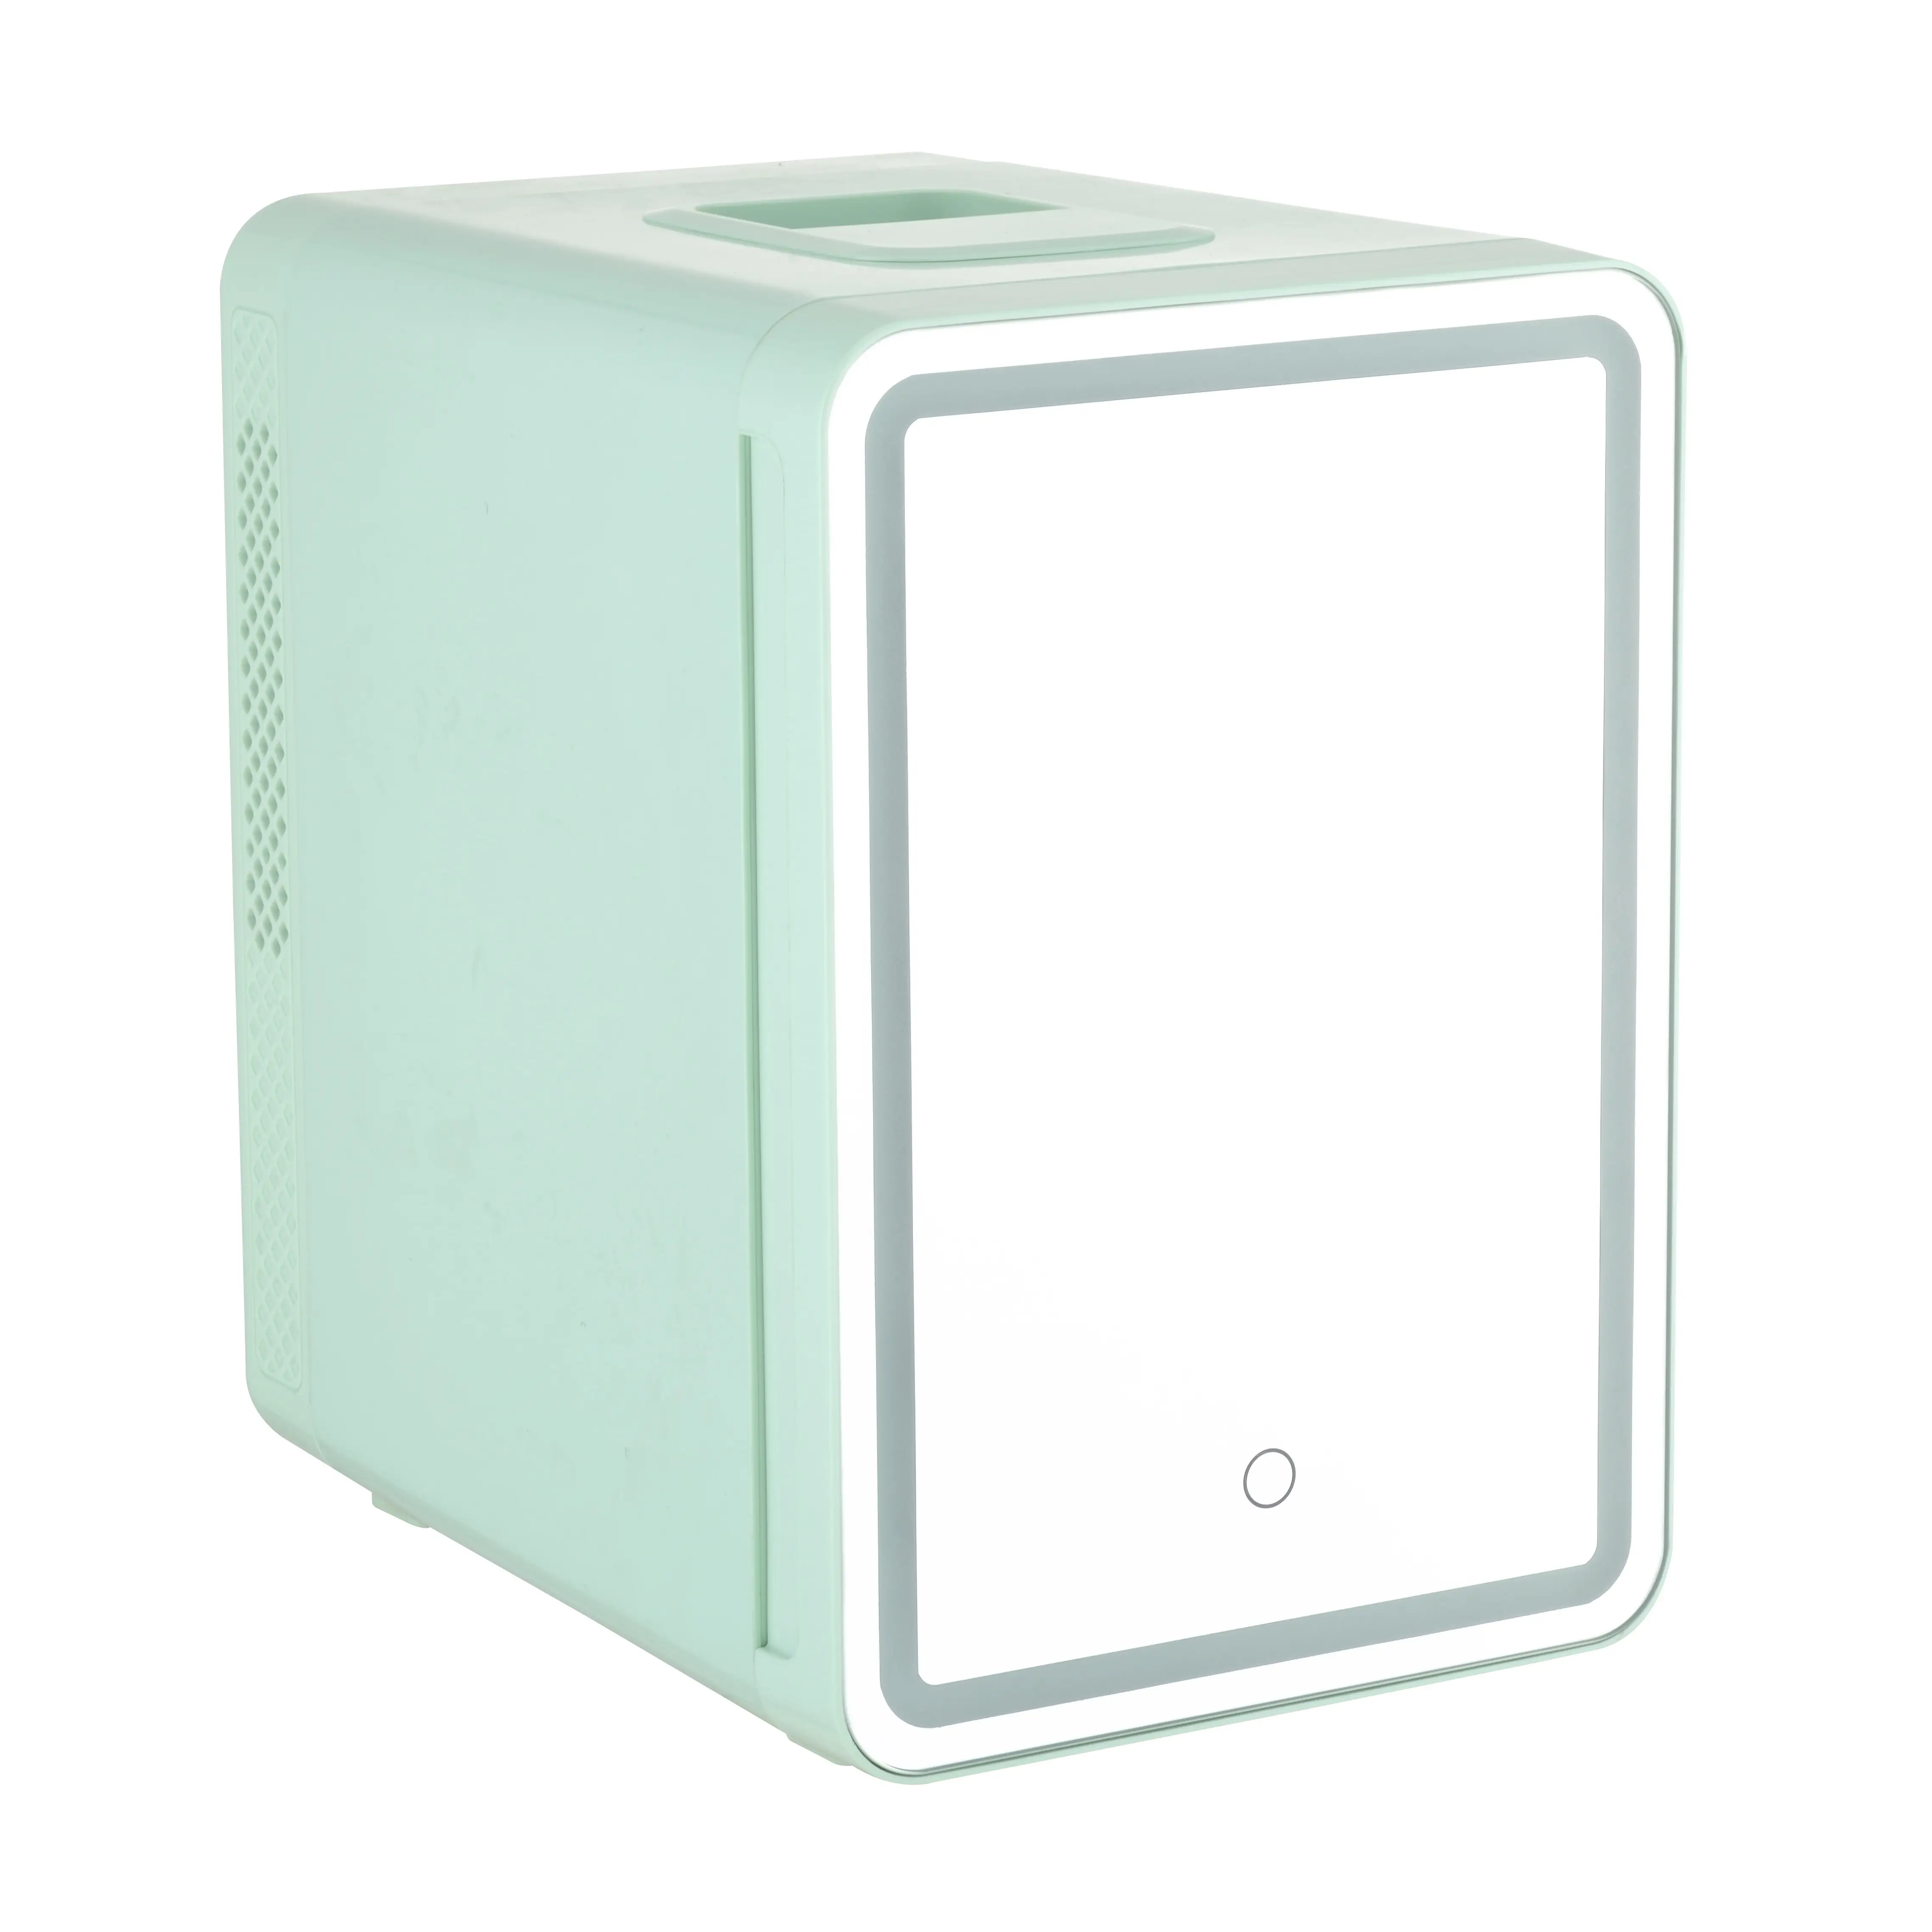 Yeni tasarım 10L makyaj güzellik kozmetik cilt bakımı buzdolabı soğutucu mini buzdolabı ile ayna LED ışık